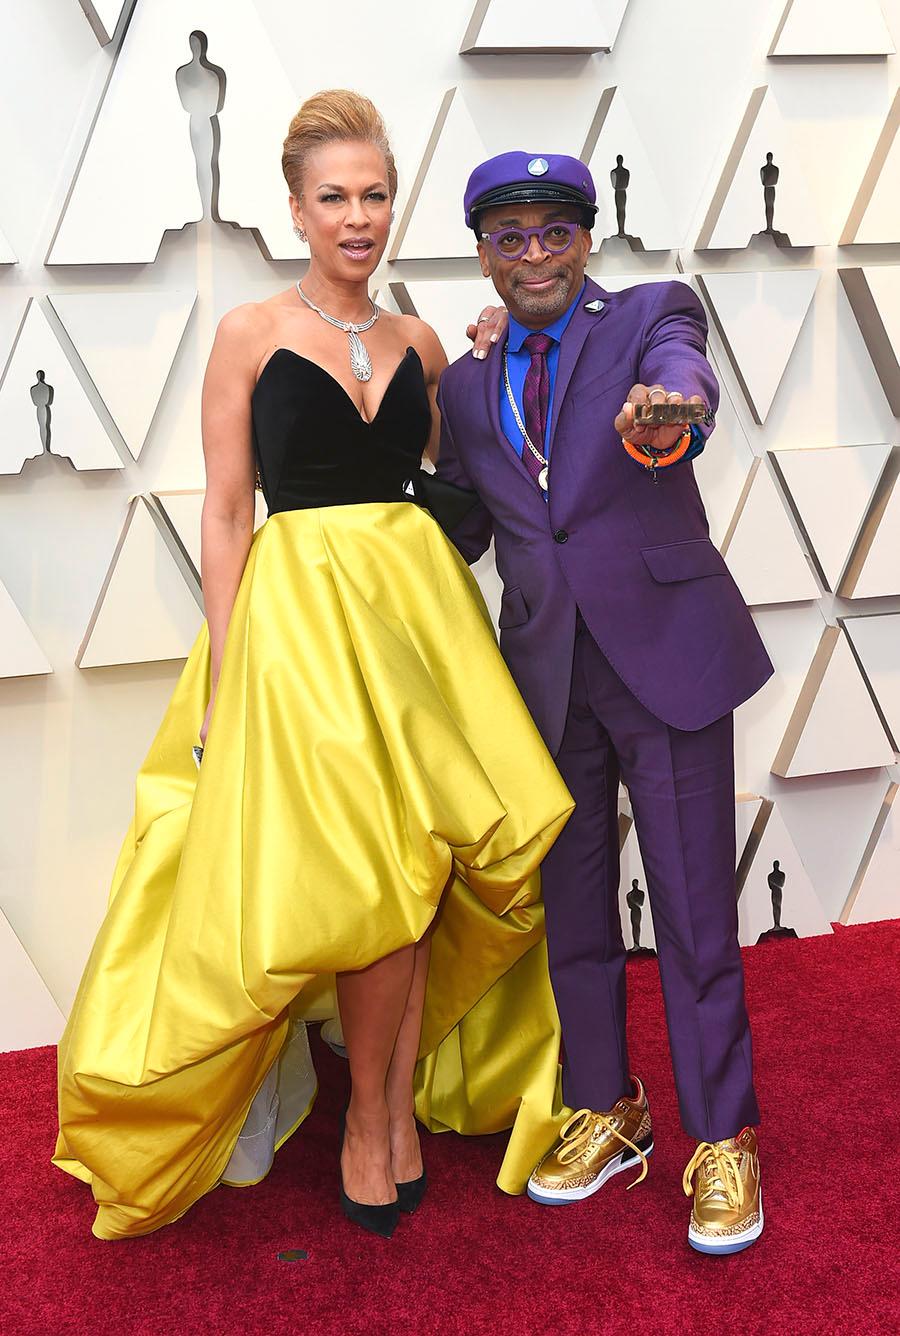 Tonya Lewis Lee tillsammans med sin man Spike Lee som är nominerad för filmen “BlacKkKlansman.”